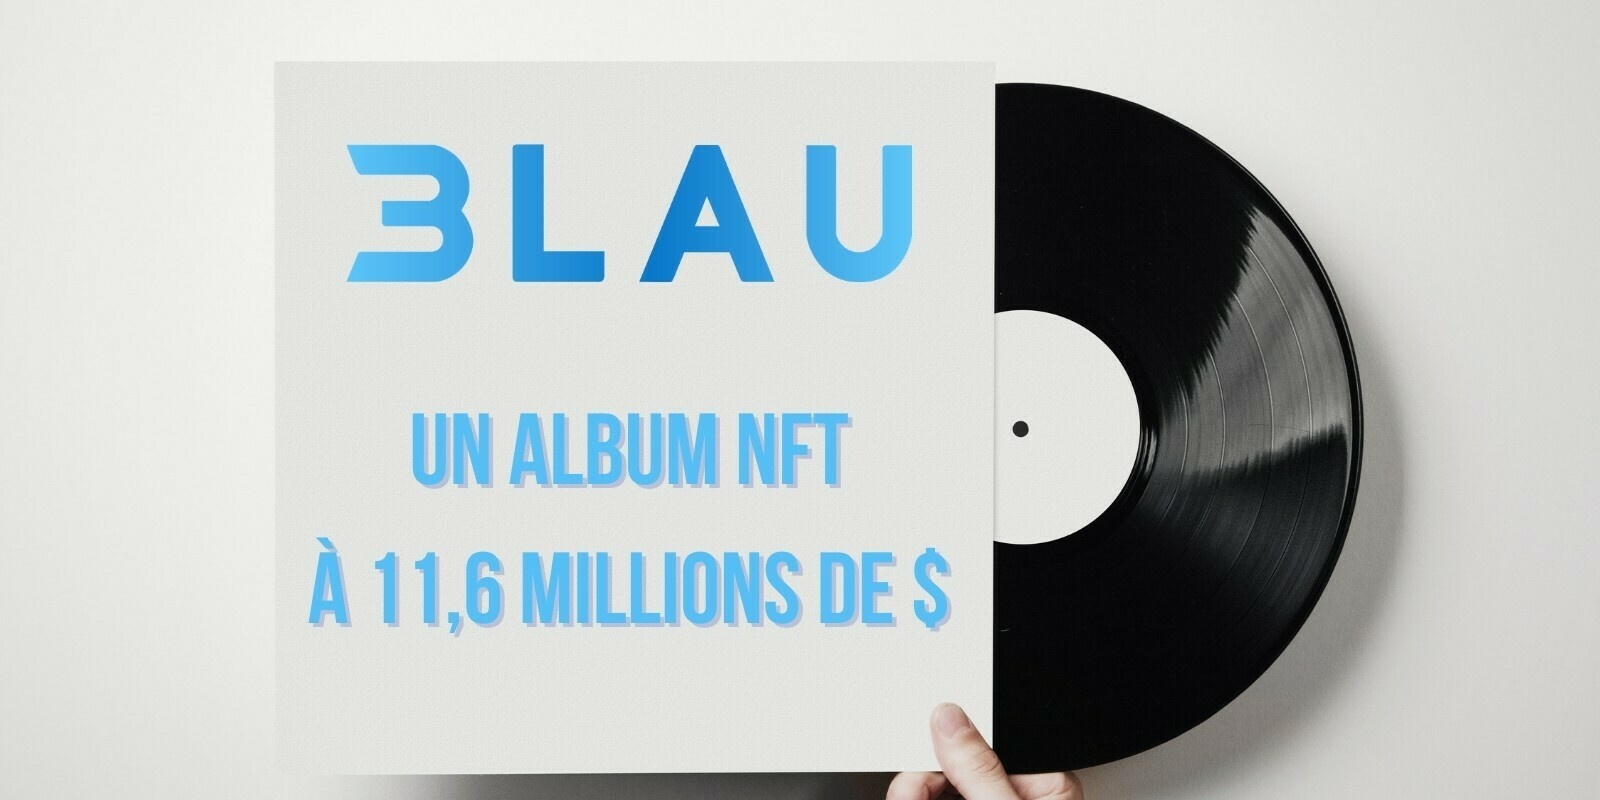 album-nft-3lau-recolte-11-6-millions-dol